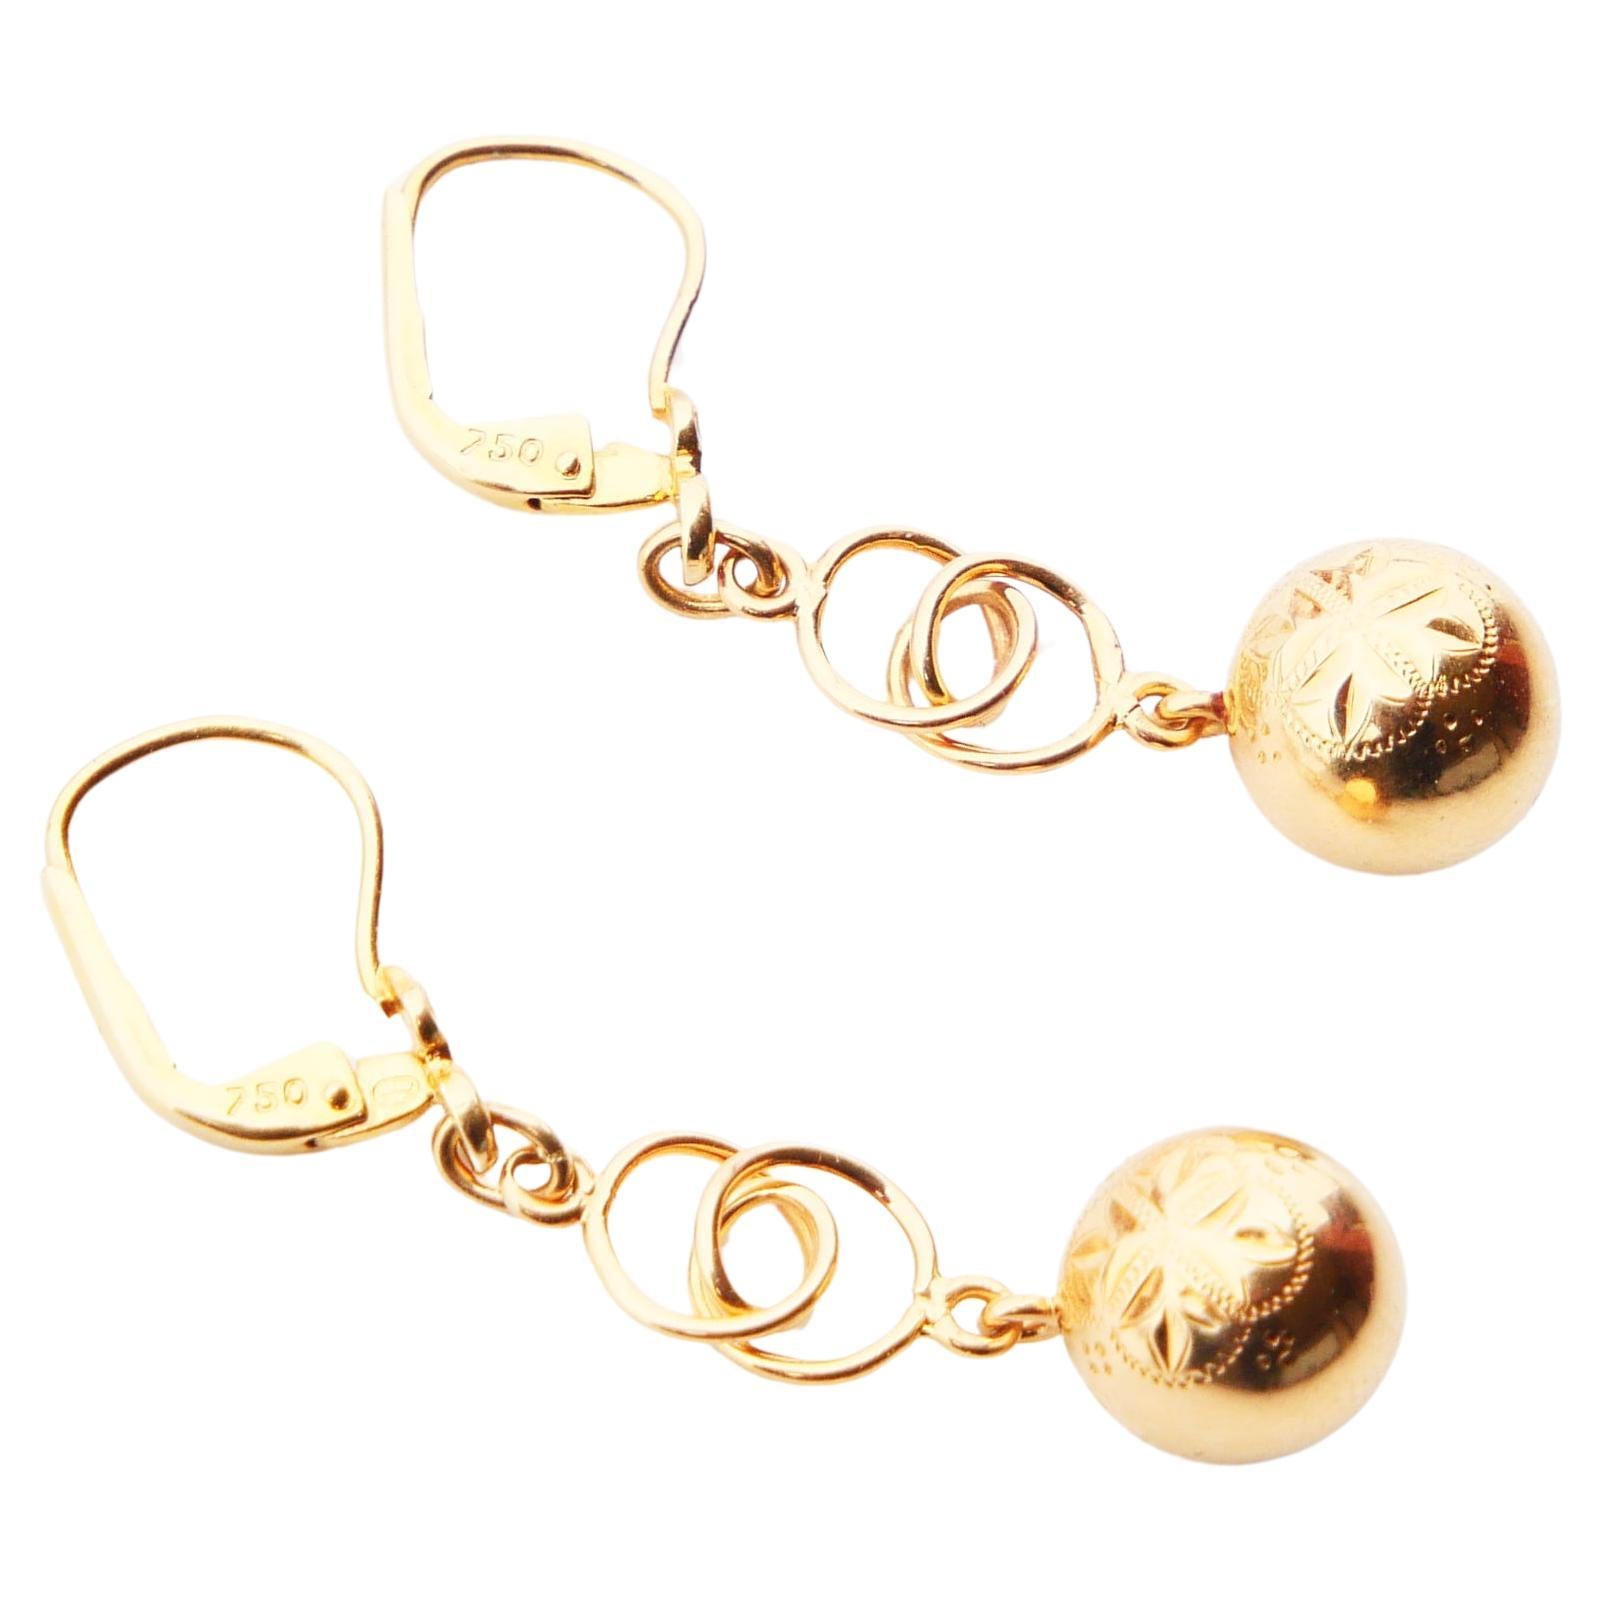 Boucles d'oreilles européennes anciennes boules octogonales étoiles en or massif 18 carats 3,8 g